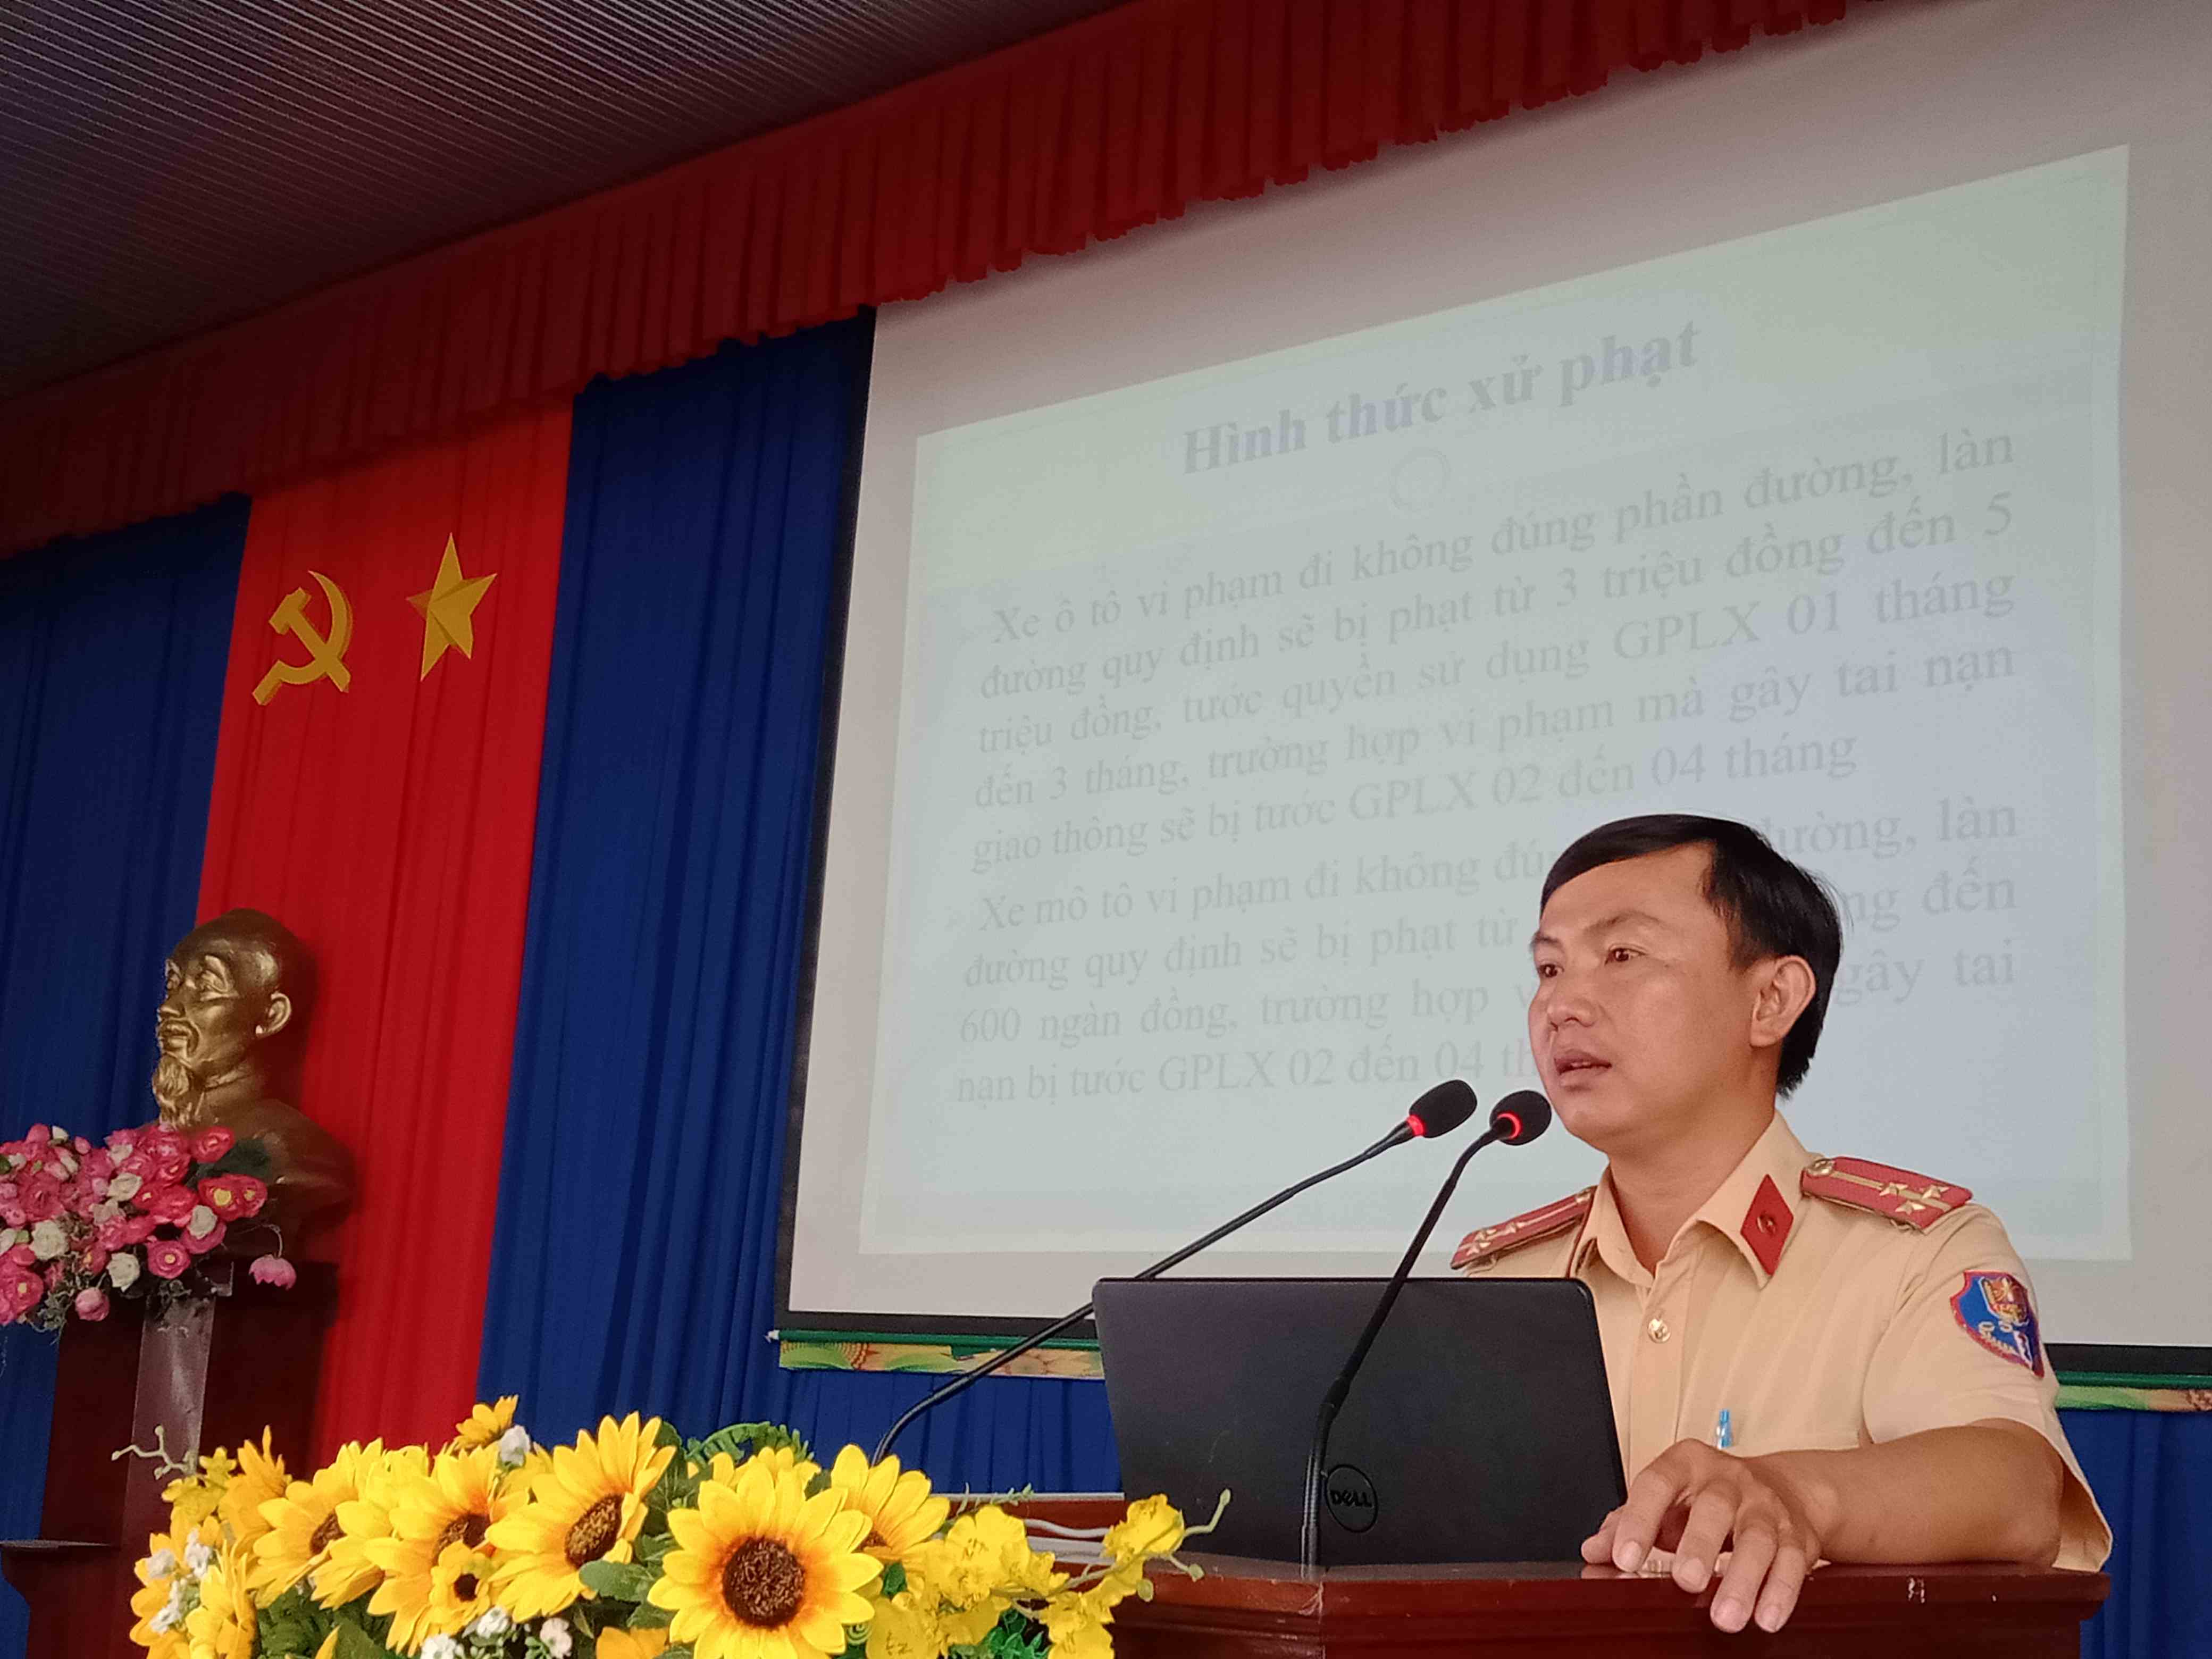 Huyện Dương Minh Châu: Tuyên truyền An toàn giao thông cho trên 50 hội viên cựu chiến binh